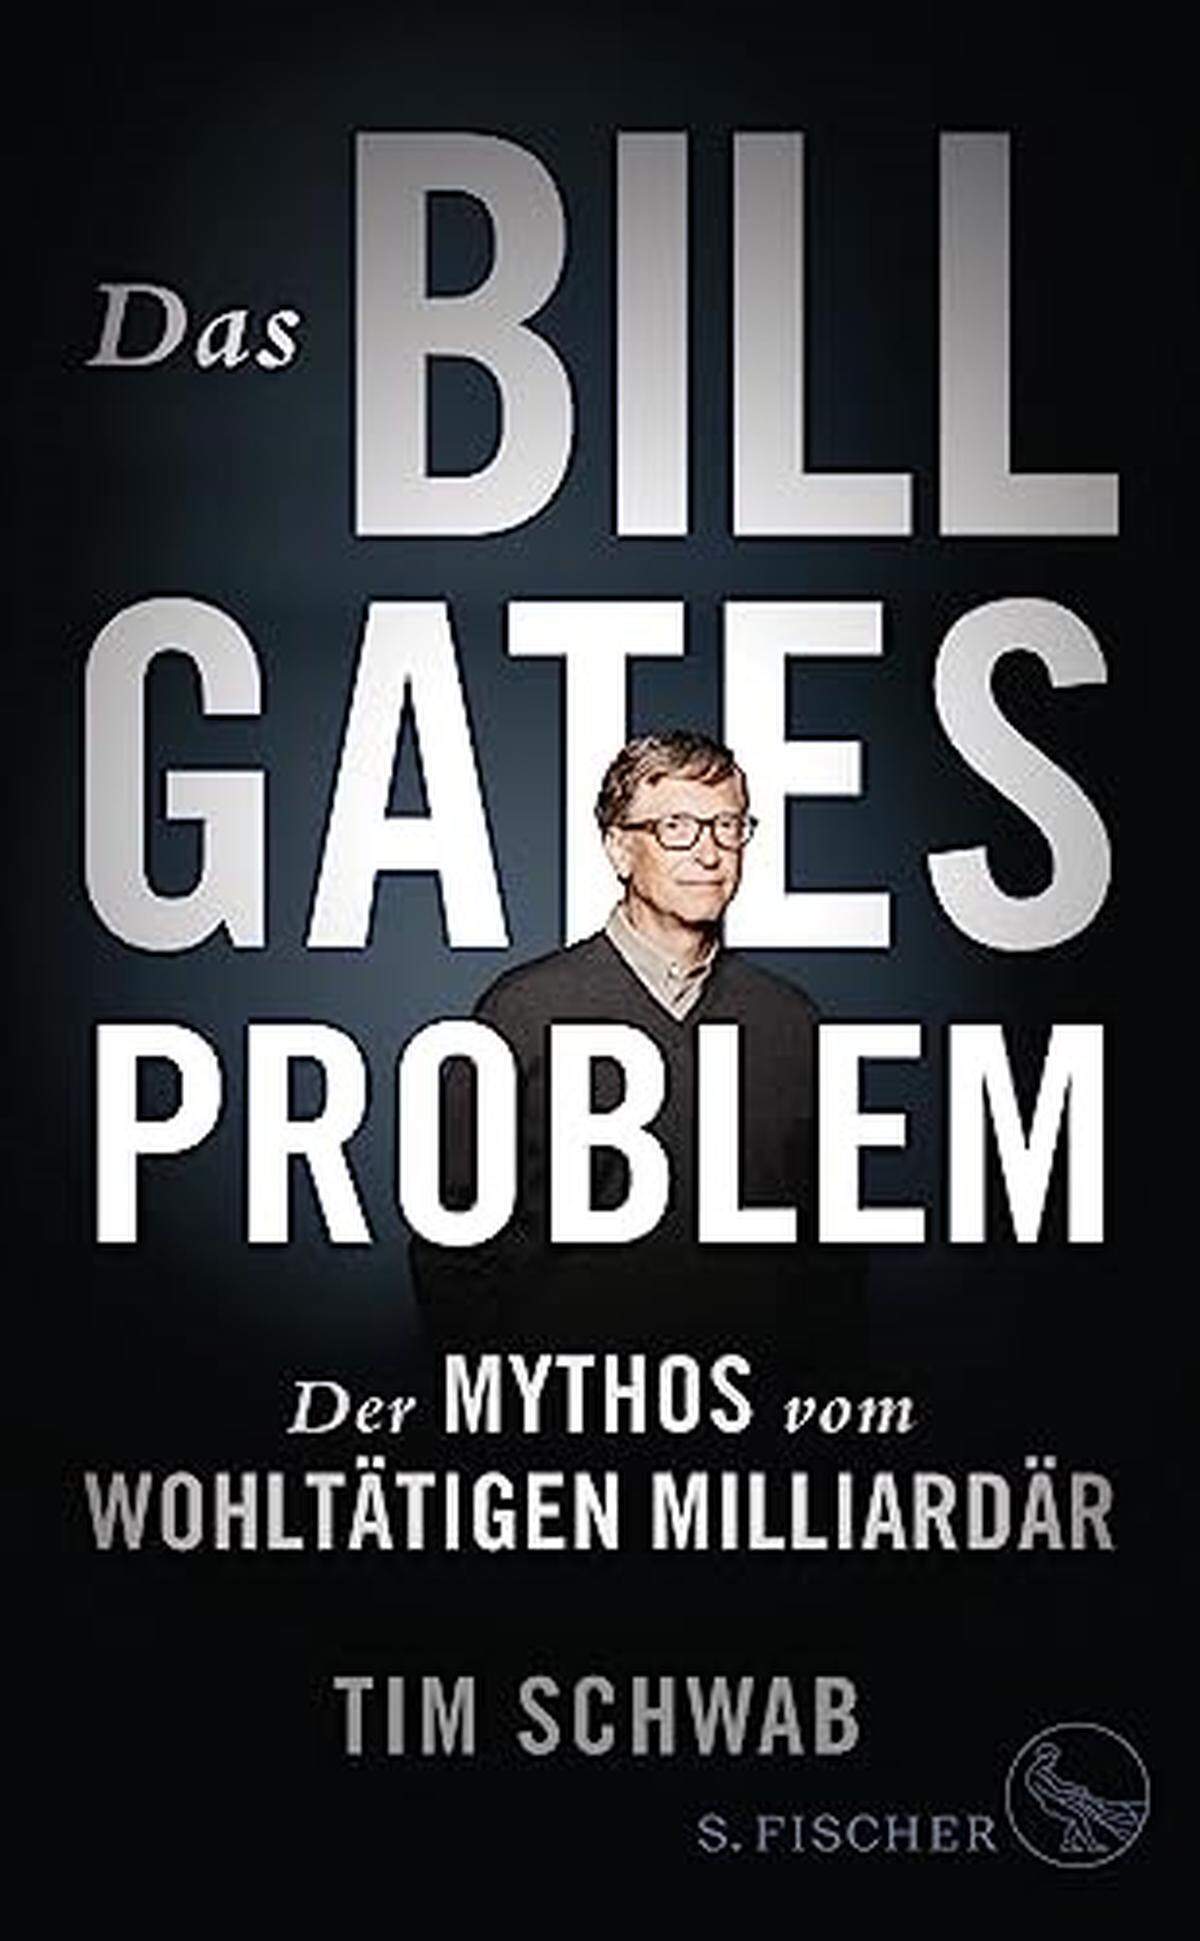 Platz 1: Das Bill-Gates-Problem
Der Mythos vom wohltätigen Milliardär. 
Tim Schwab 

In der Öffentlichkeit gilt Bill Gates als Wohltäter, der sein Milliardenvermögen zum Wohl der Ärmsten dieser Welt einsetzt. Tatsächlich verfolgt der Microsoft-Gründer mit seiner karitativen Stiftung knallharte politische und wirtschaftliche Interessen, wie Tim Schwab in seinem Buch minutiös aufzeigt. Dabei ist Gates nicht der einzige Tech-Milliardär, der die Philanthropie nutzt, um Macht zu erlangen und die Welt nach eigenen Vorstellungen zu gestalten. Schwabs gründlich recherchierte Studie gibt zu denken. Man mag ihr eine gewisse Einseitigkeit vorwerfen – dennoch ist dem Autor zu verdanken, dass er jene Seite beleuchtet, die bislang weitgehend im Dunkeln geblieben ist.